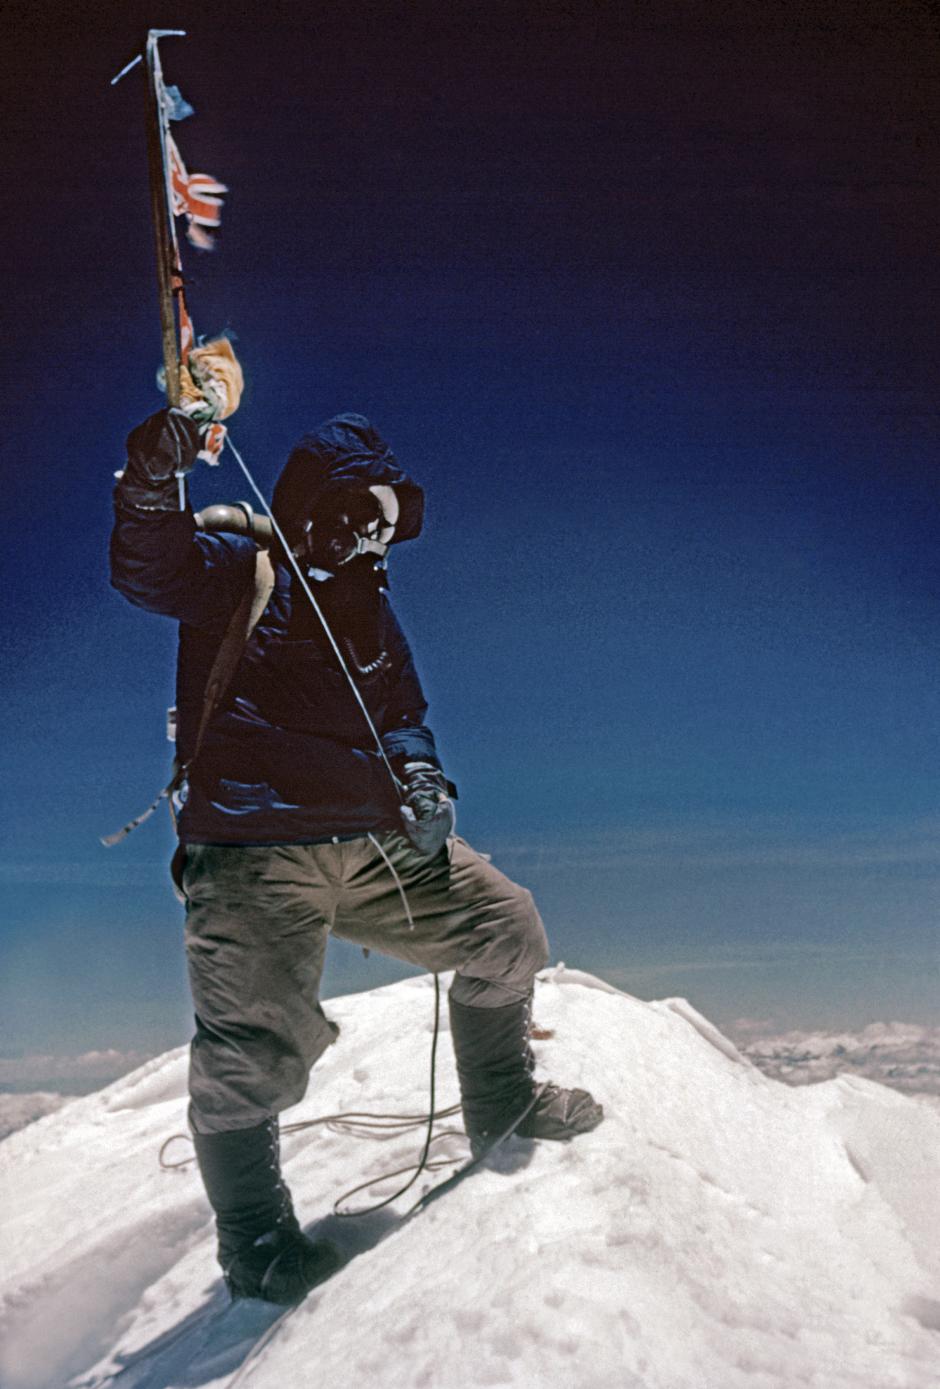 Fotografía de Tenzing Norgay tomada por Edmund Hillary en la cumbre del Everest